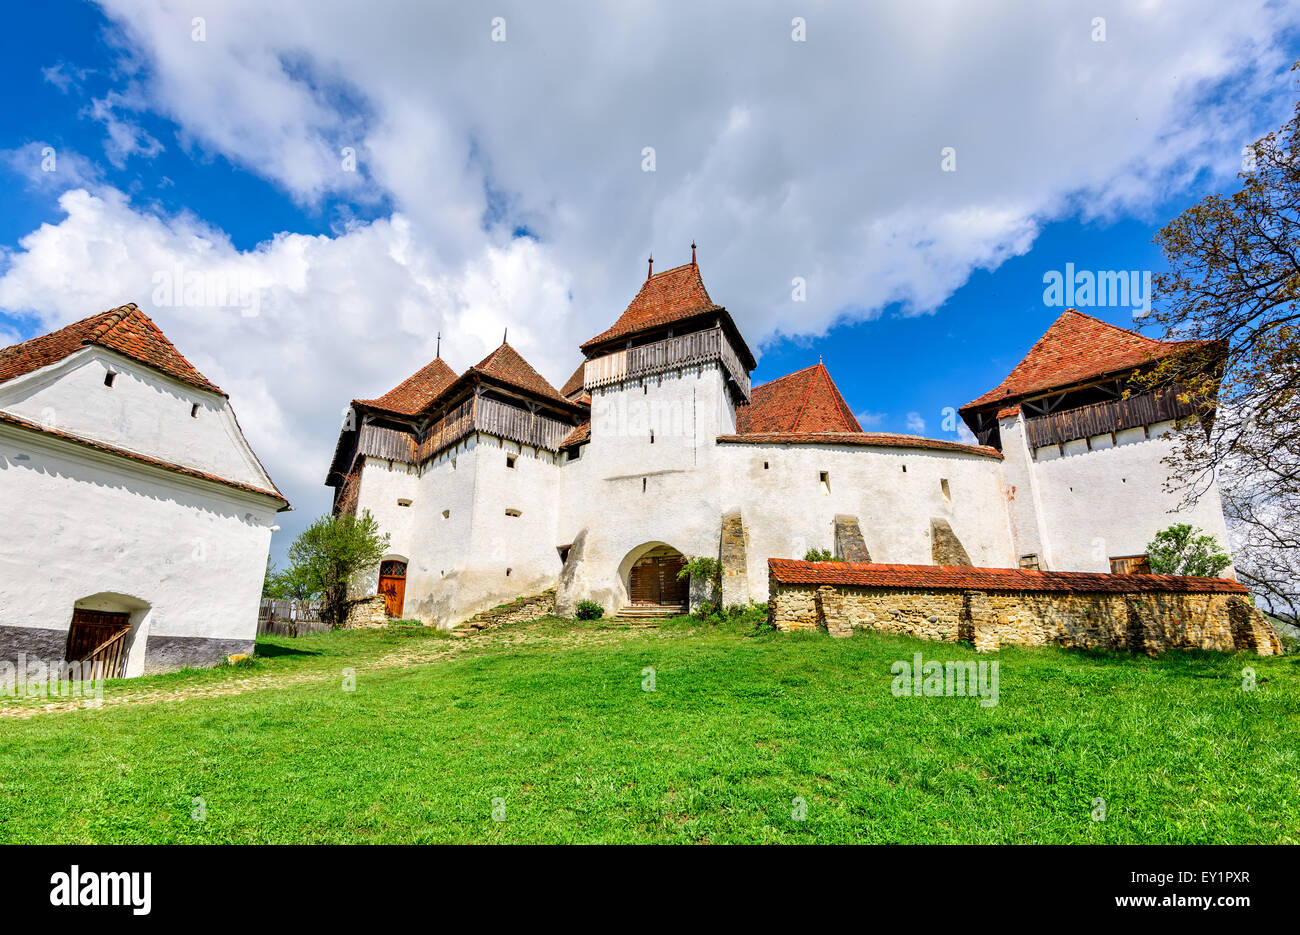 Transilvania, Romania. Immagine della chiesa fortificata di Viscri, nonché patrimonio dell'UNESCO, tedesco landmark in rumeno di paese. Foto Stock